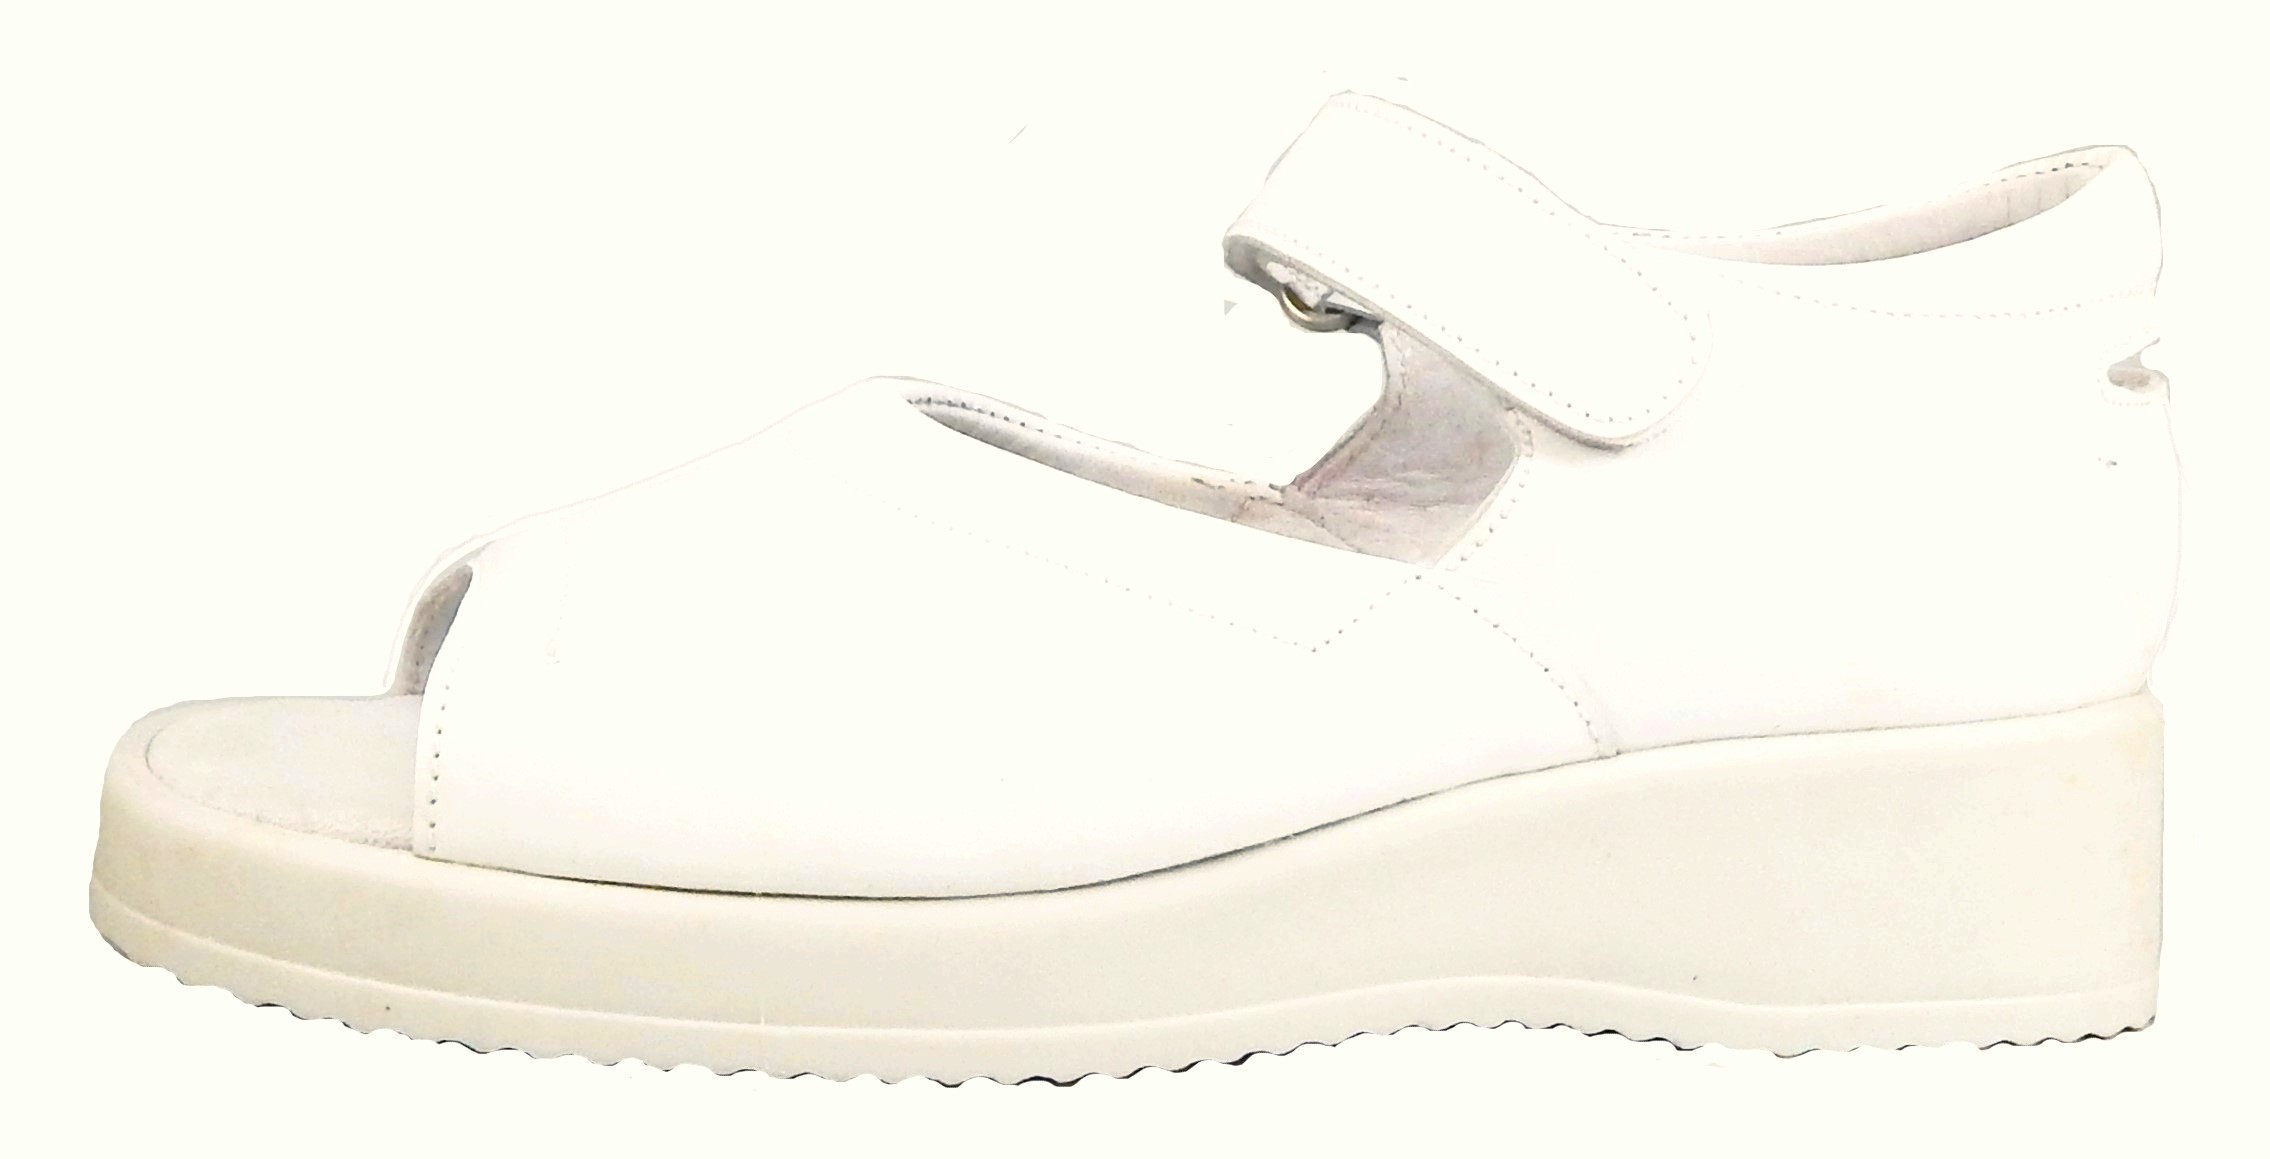 FARO B-3006 - White Sandals - Euro 27 Size 10